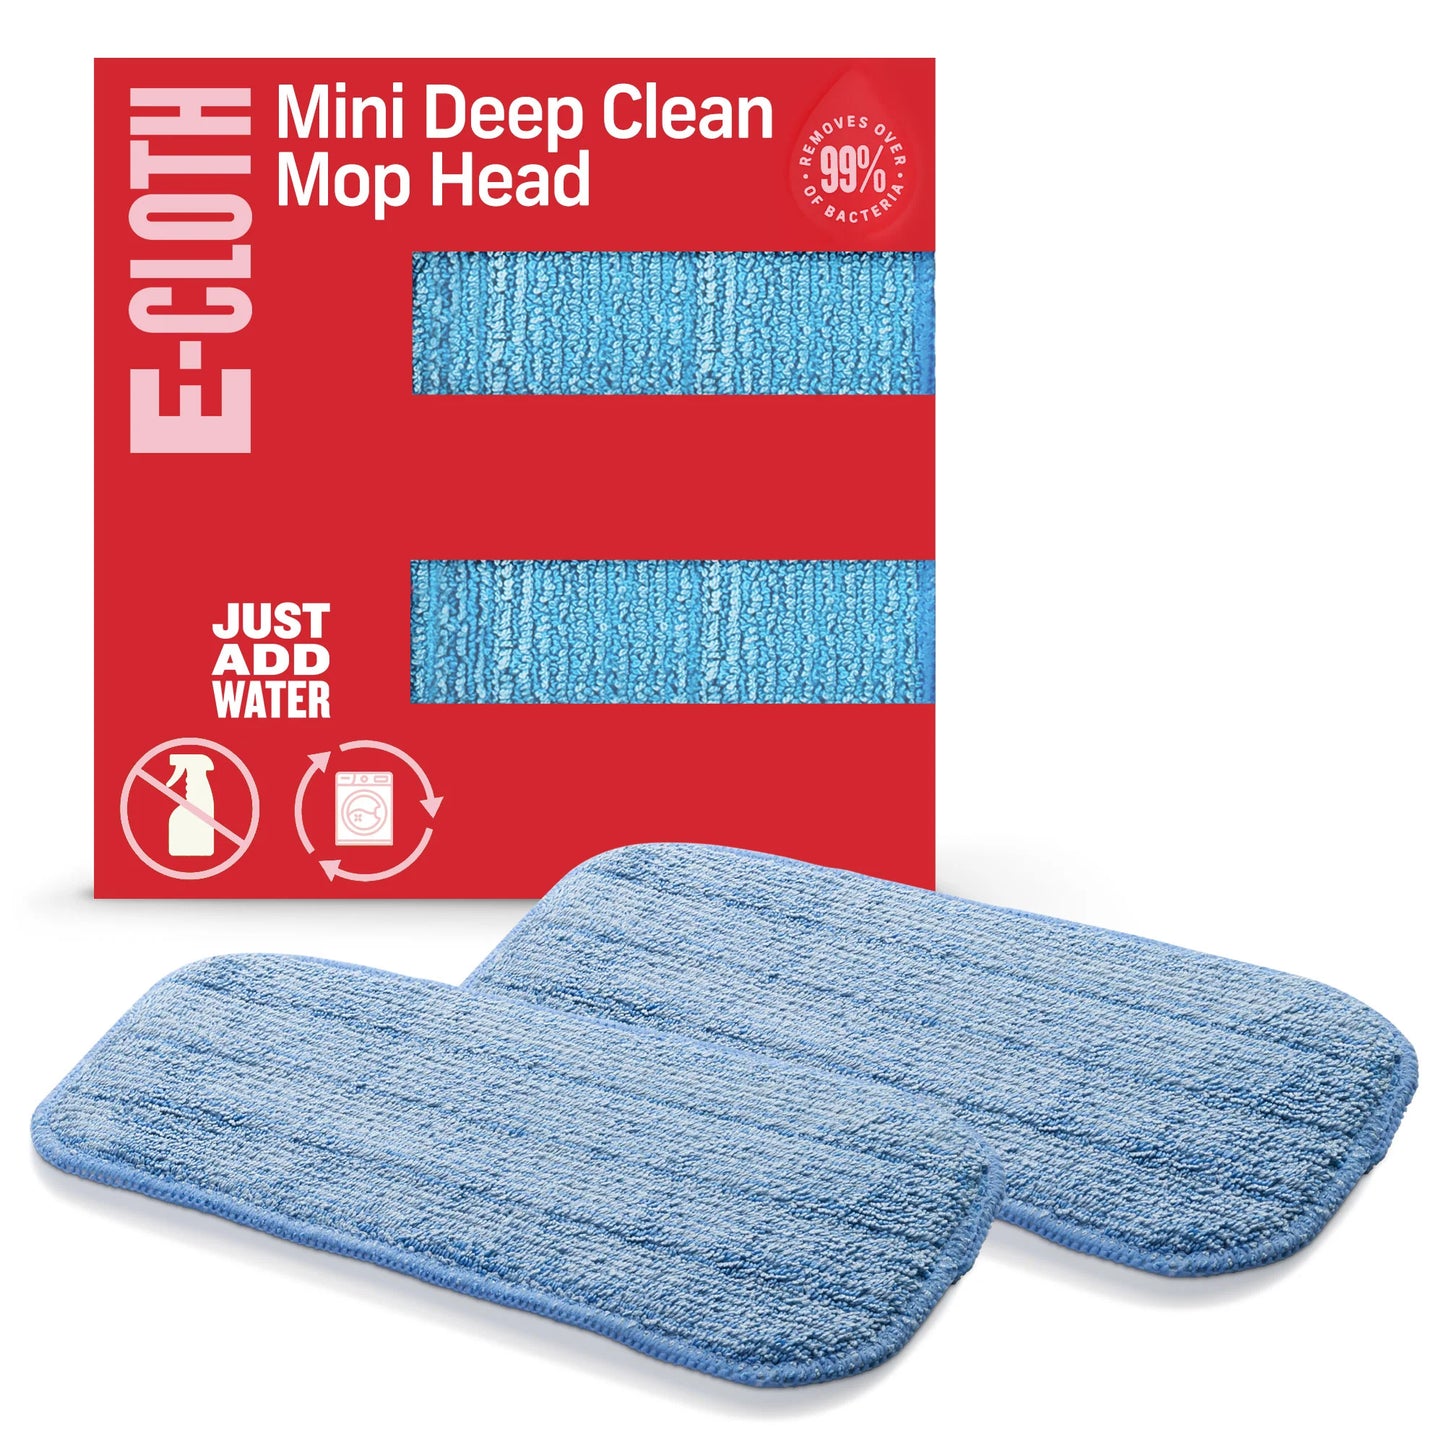 Mini Deep Clean Mop Head